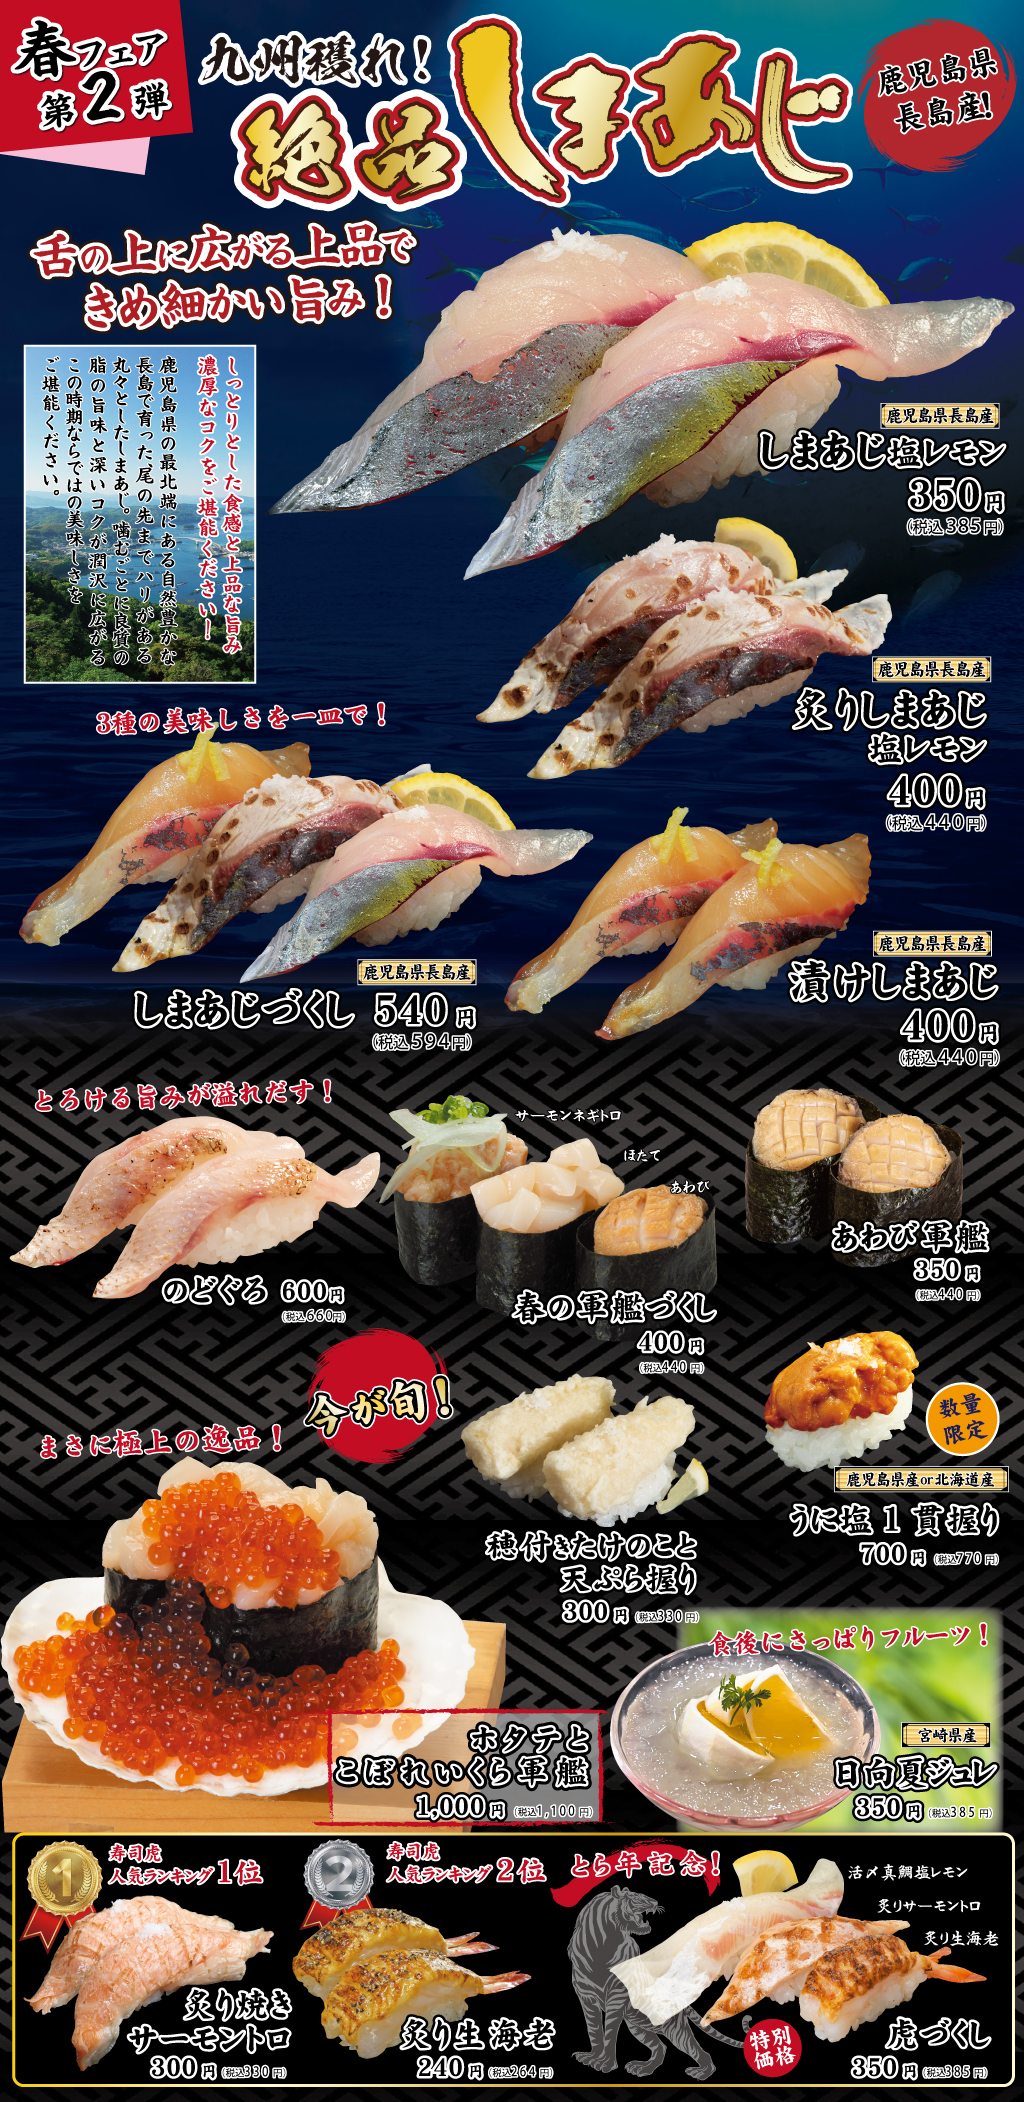 九州獲れ しまあじフェア開催中 お知らせ 究極 回転寿司 寿司虎